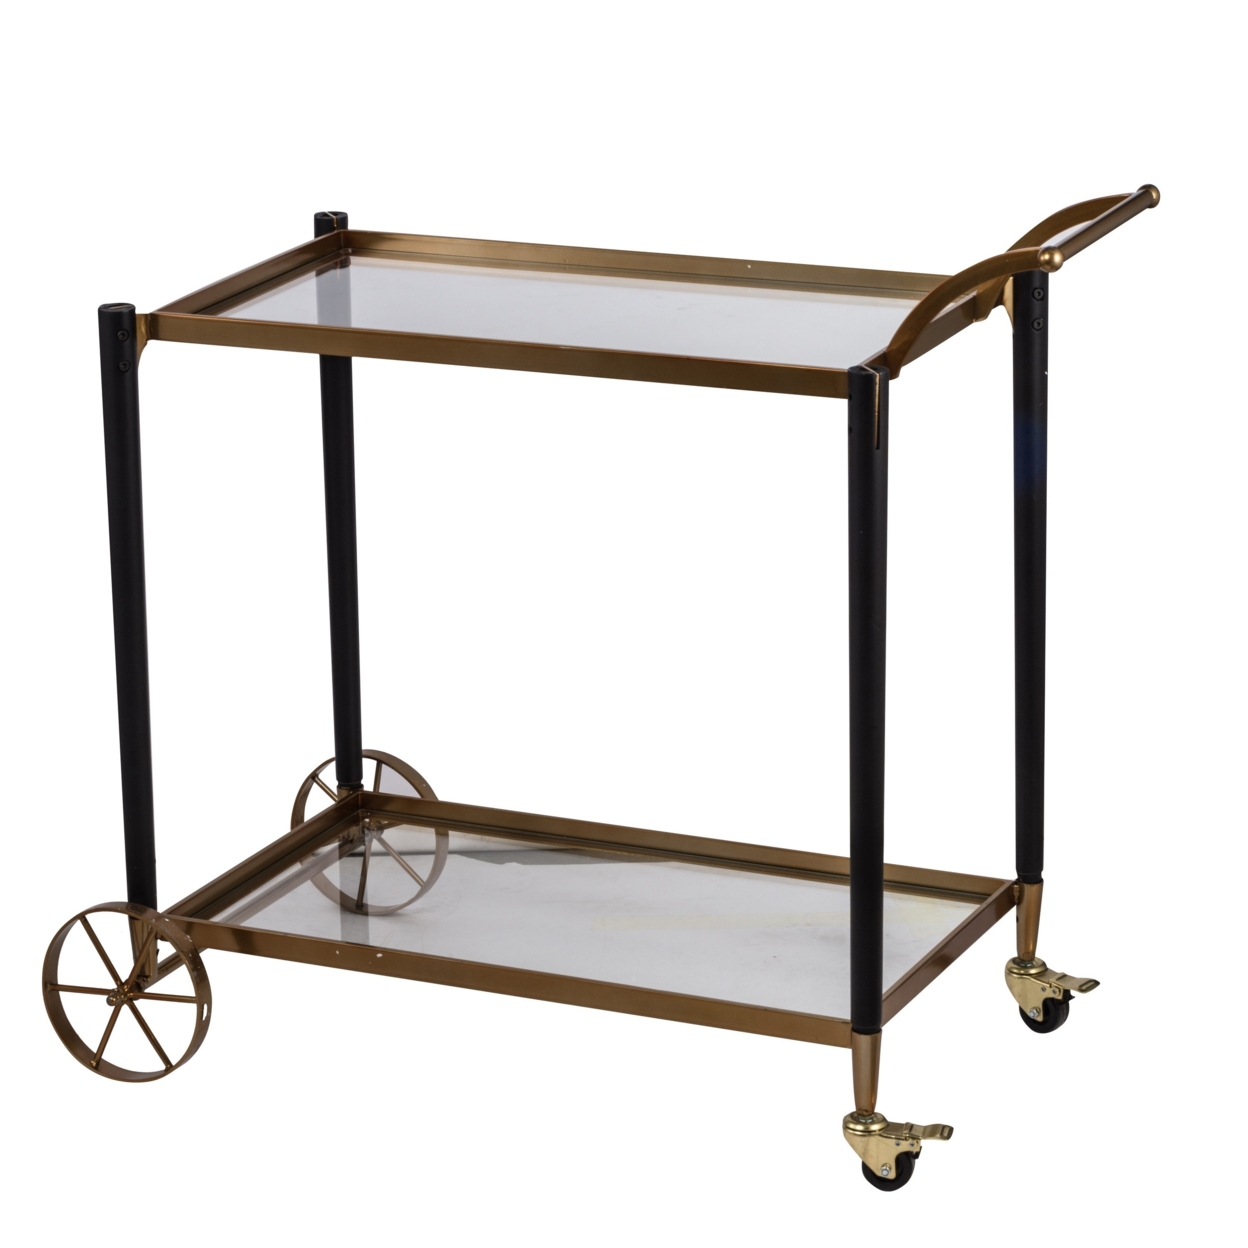 36 Inch Serving Cart, Metal And Fir Wood, 2 Tier Glass Shelves, Gold, Black- Saltoro Sherpi